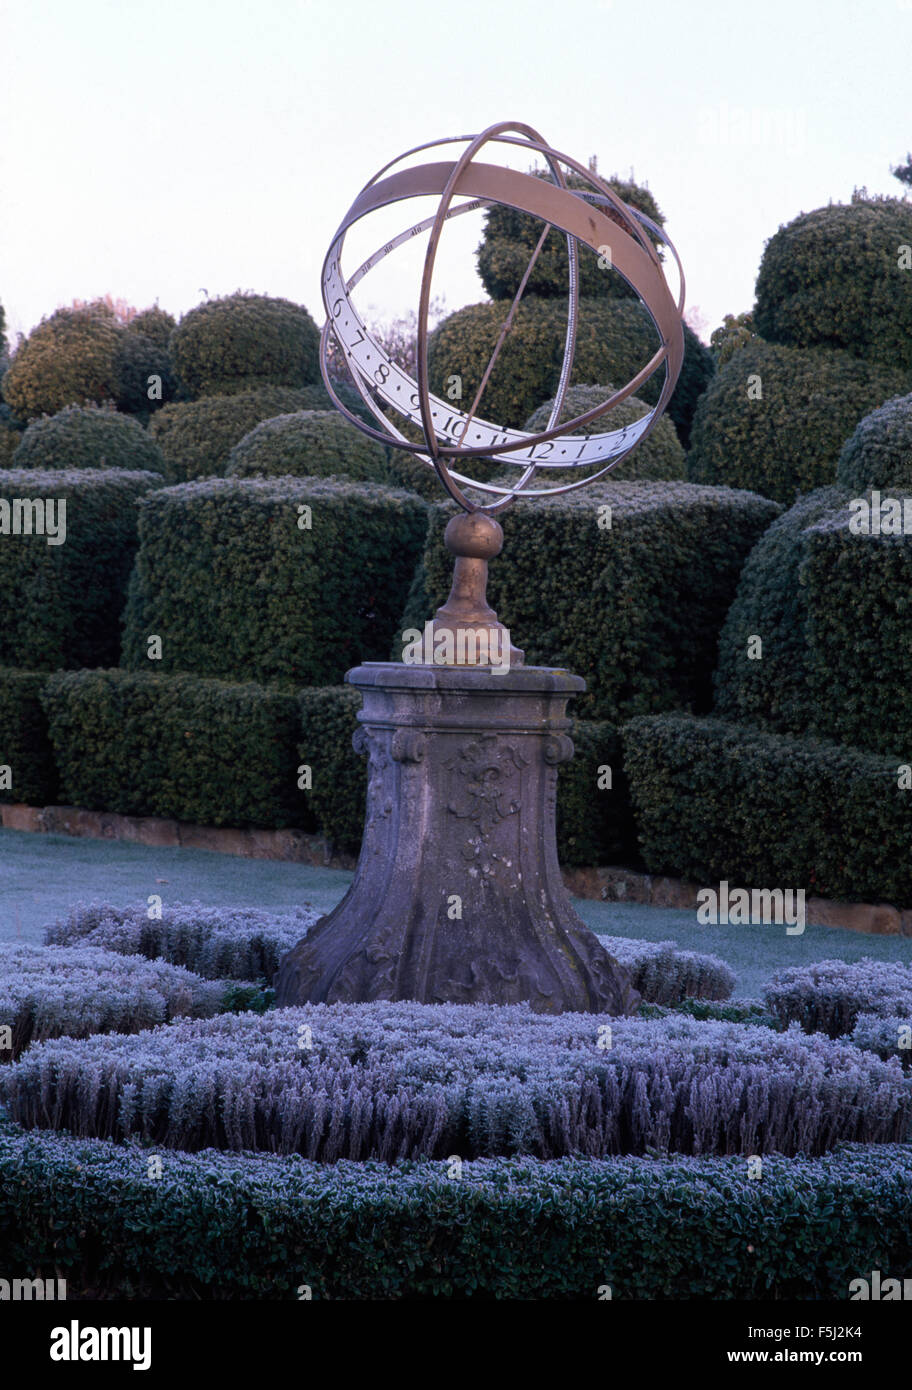 Sphère armillaire sur socle en pierre dans un jardin topiaire avec noeud Banque D'Images